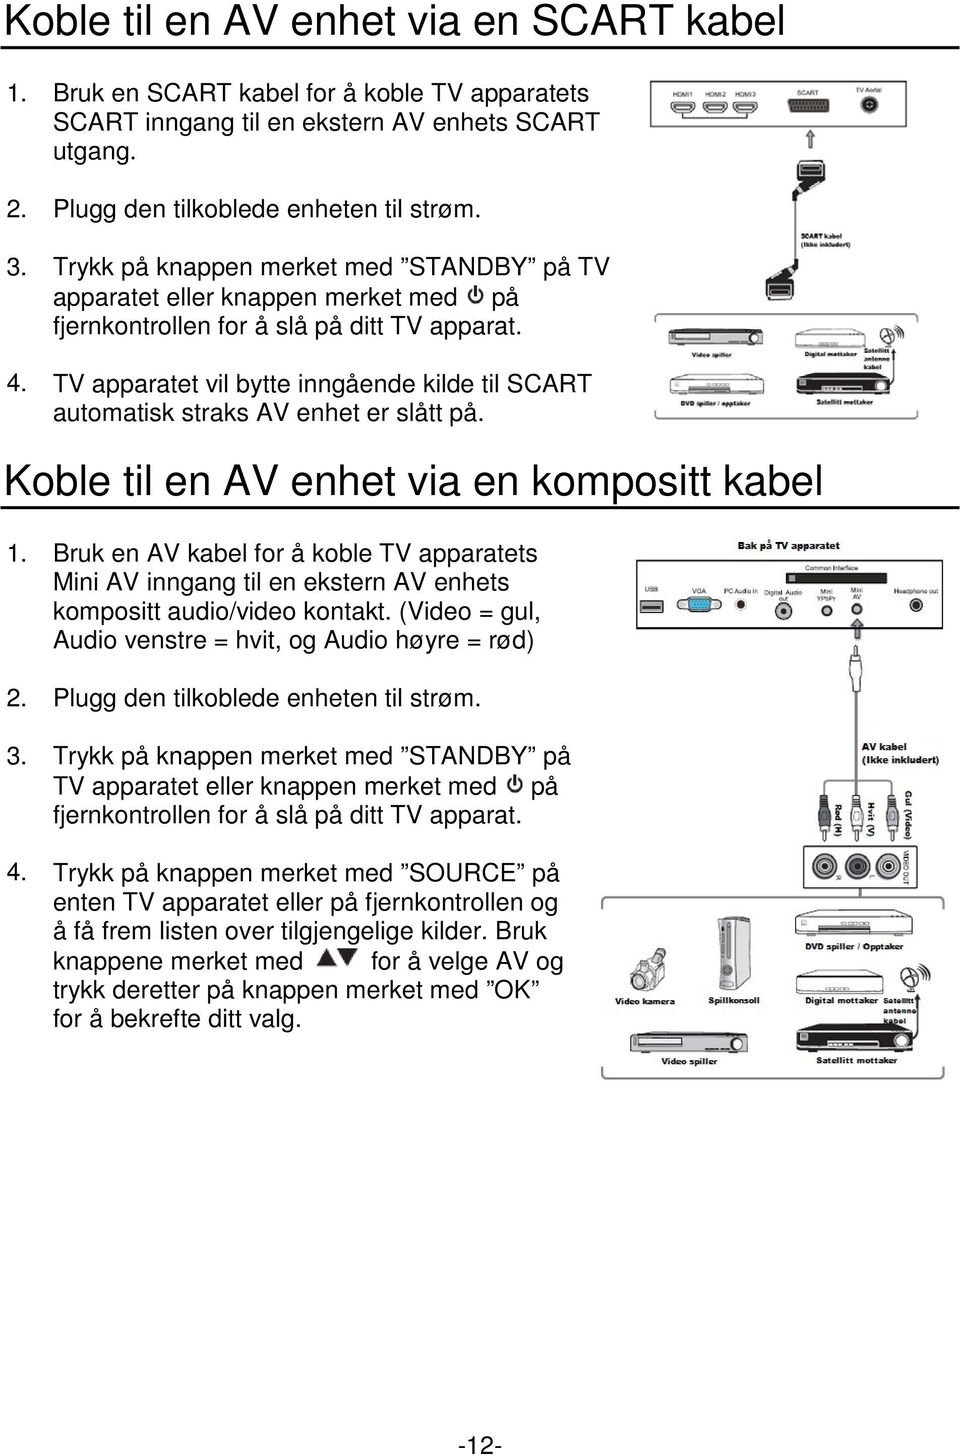 TV apparatet vil bytte inngående kilde til SCART automatisk straks AV enhet er slått på. Koble til en AV enhet via en kompositt kabel 1. 2. 3. 4.